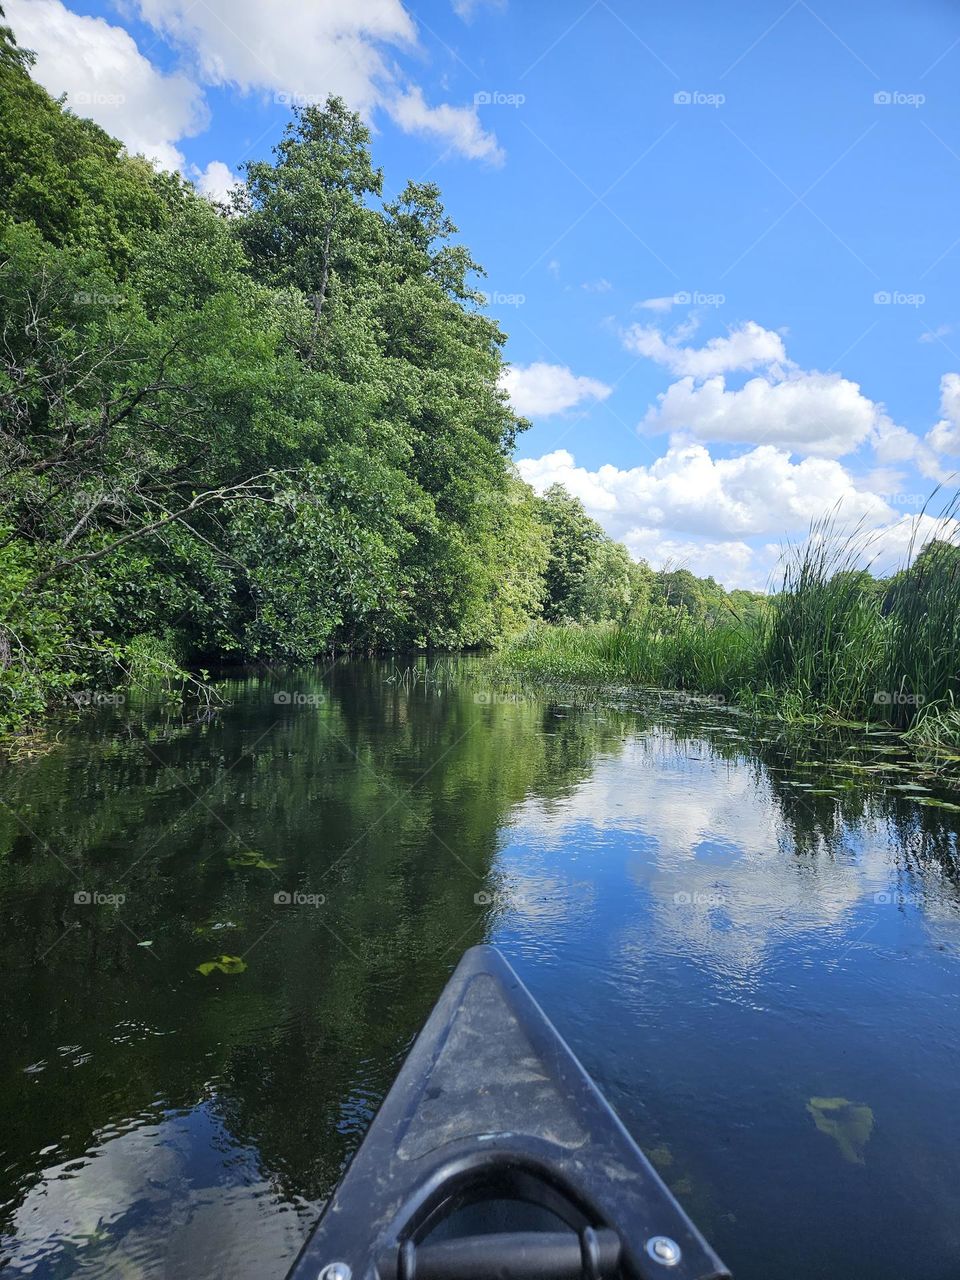 canoeing on the river of Ronneby Å